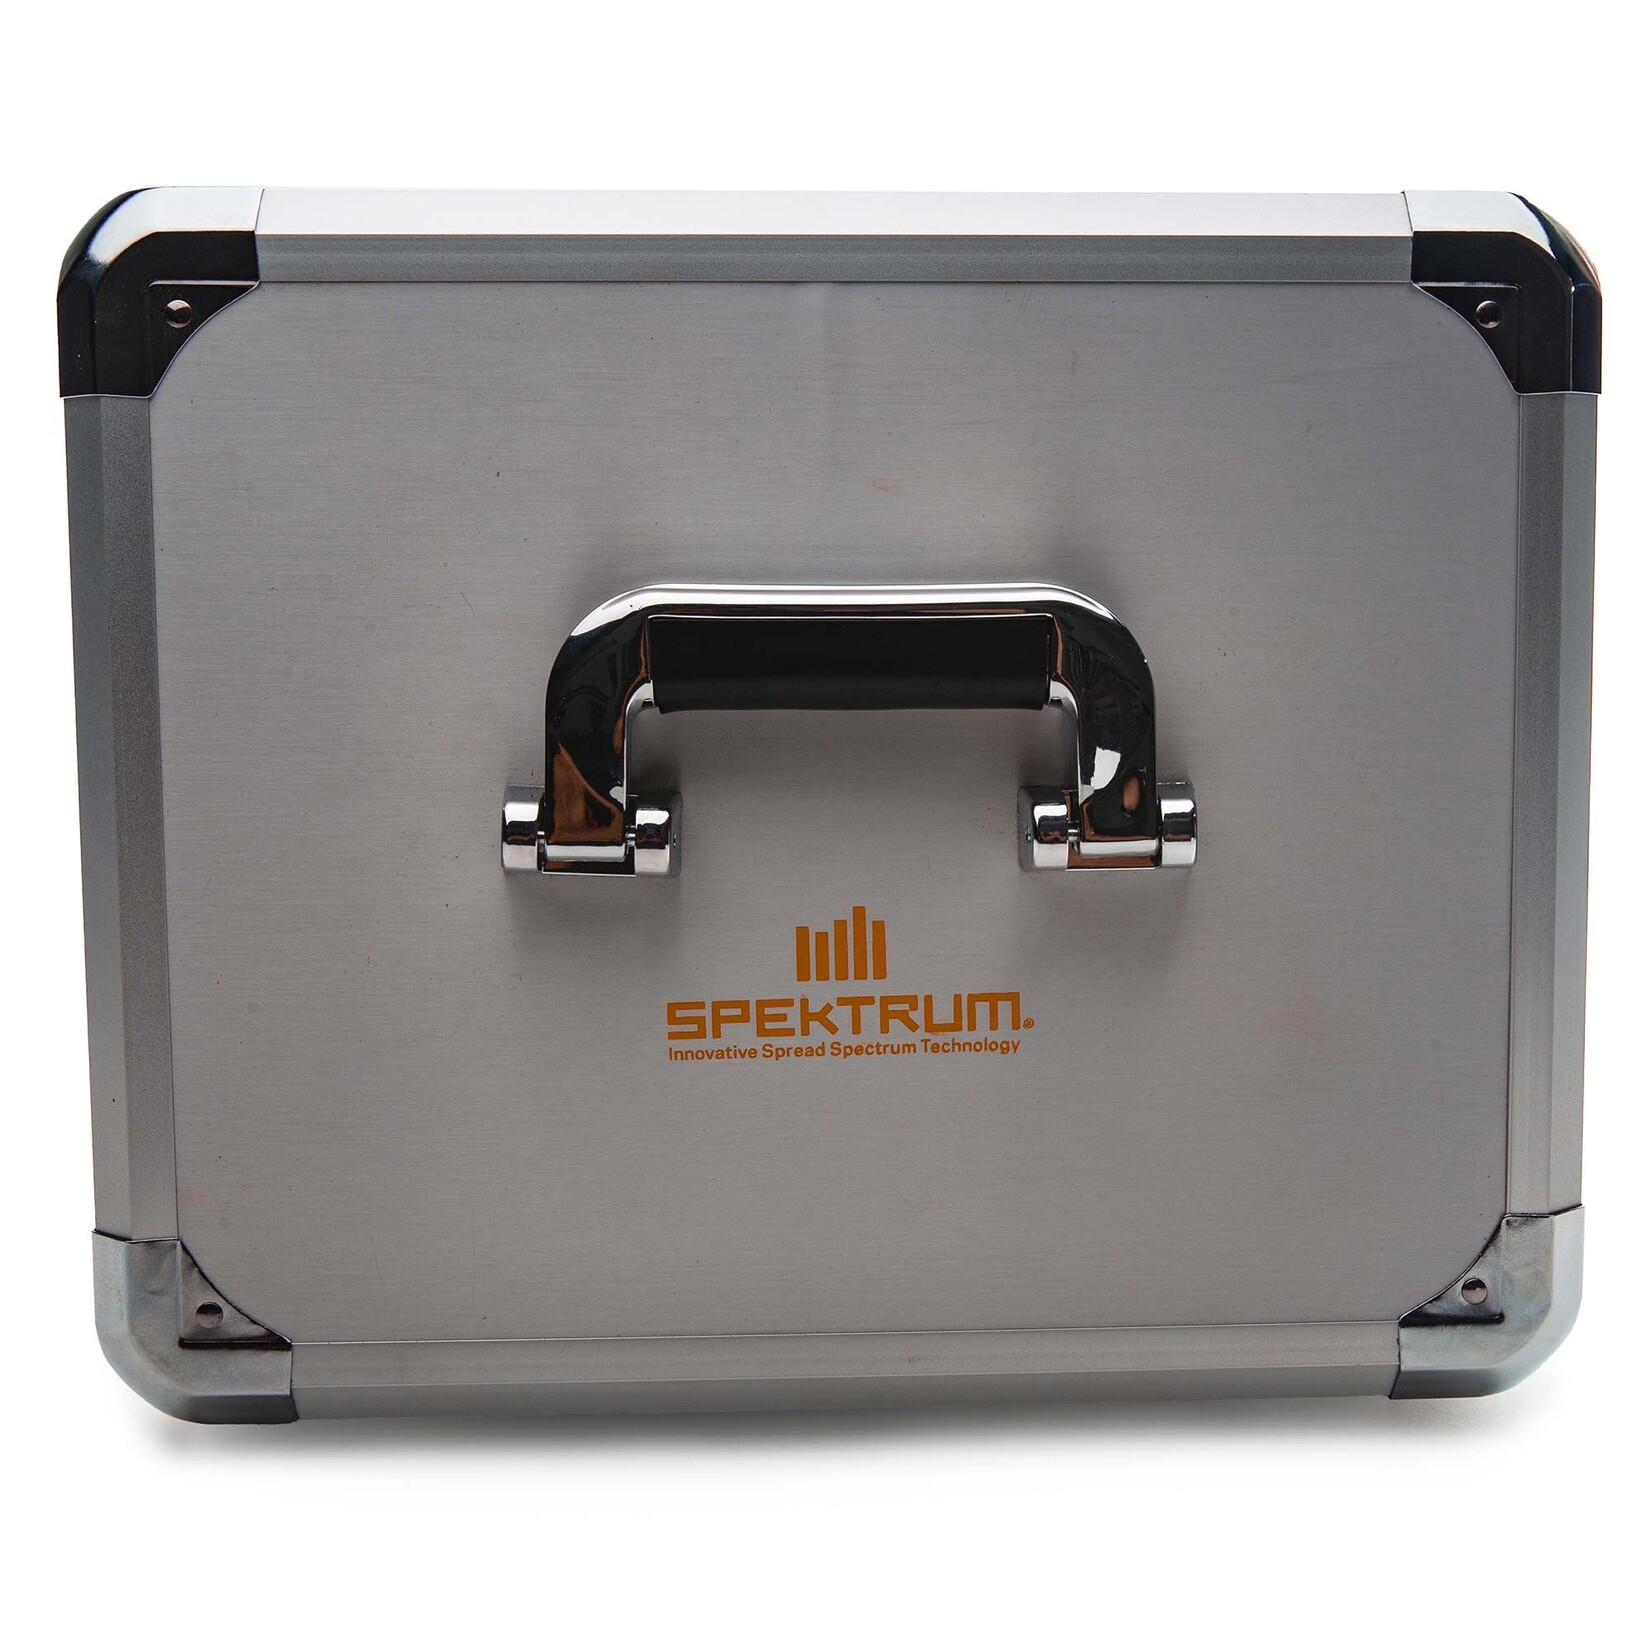 Spektrum Spektrum Dual Aluminum Stand Up Transmitter Case